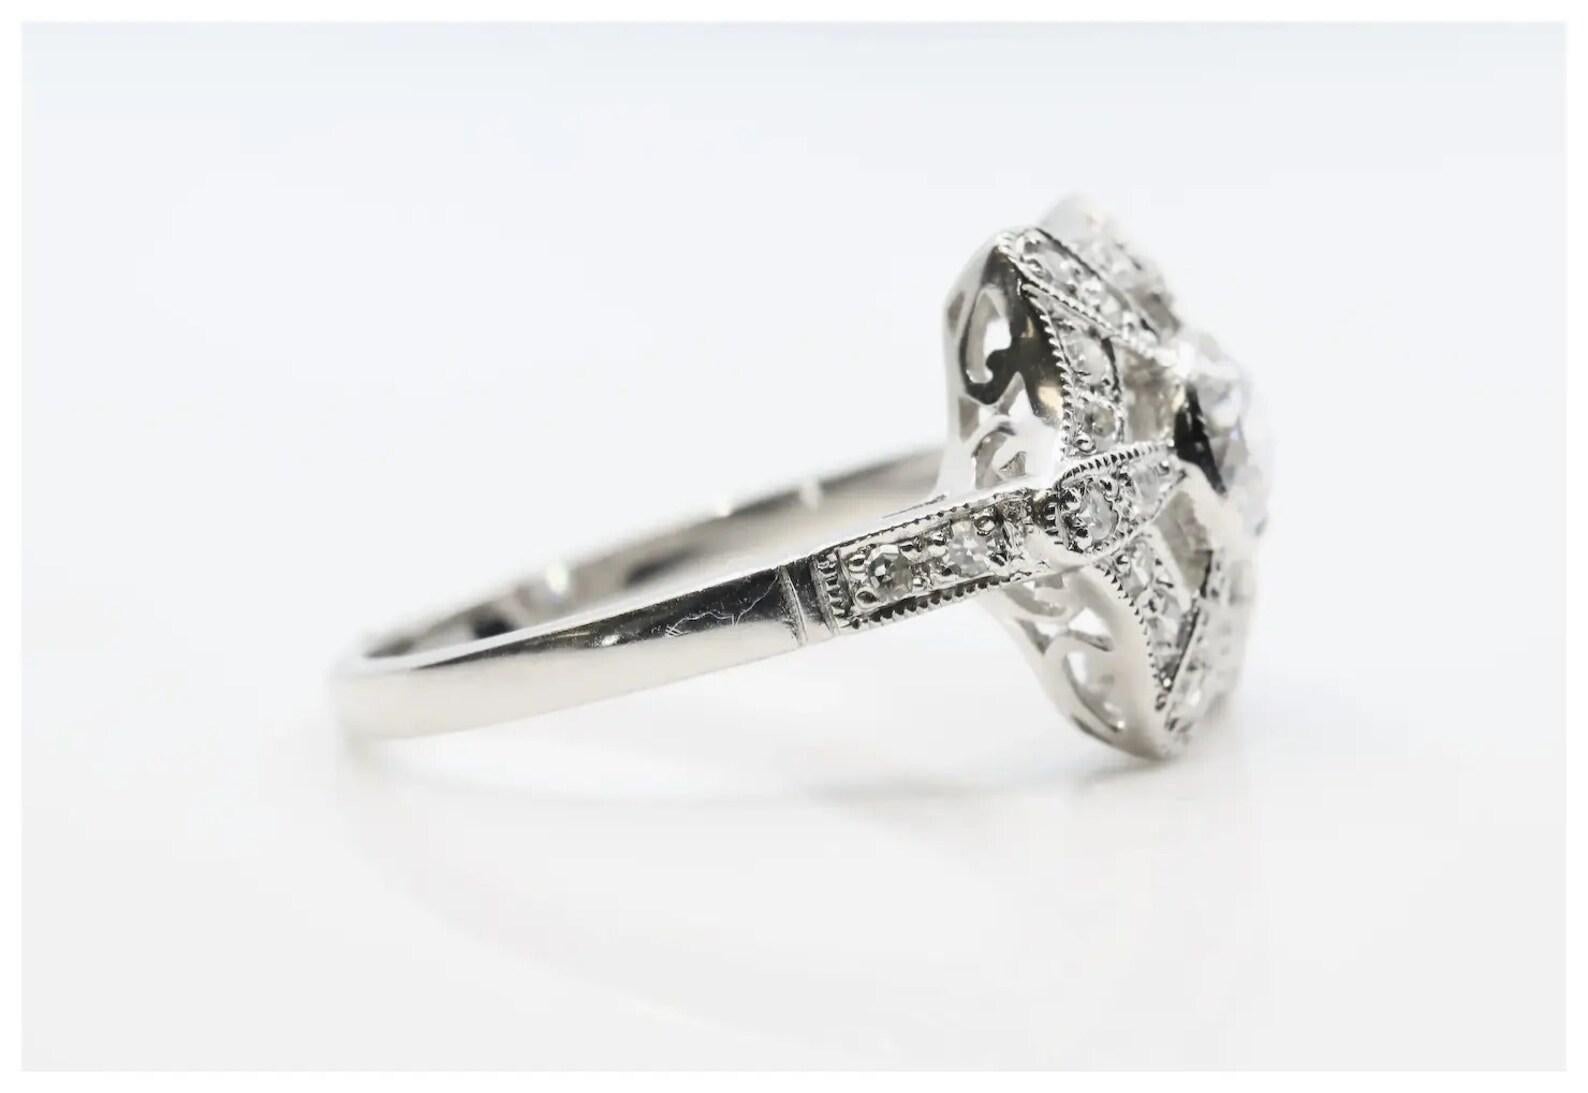 Bague de fiançailles en diamant de style Art déco en platine.

Au centre, un diamant de taille européenne ancienne de 0,55 carats, de couleur G et de pureté VS2, est serti sur le chaton.

Elle est rehaussée de rayons sertis de diamants et d'un halo